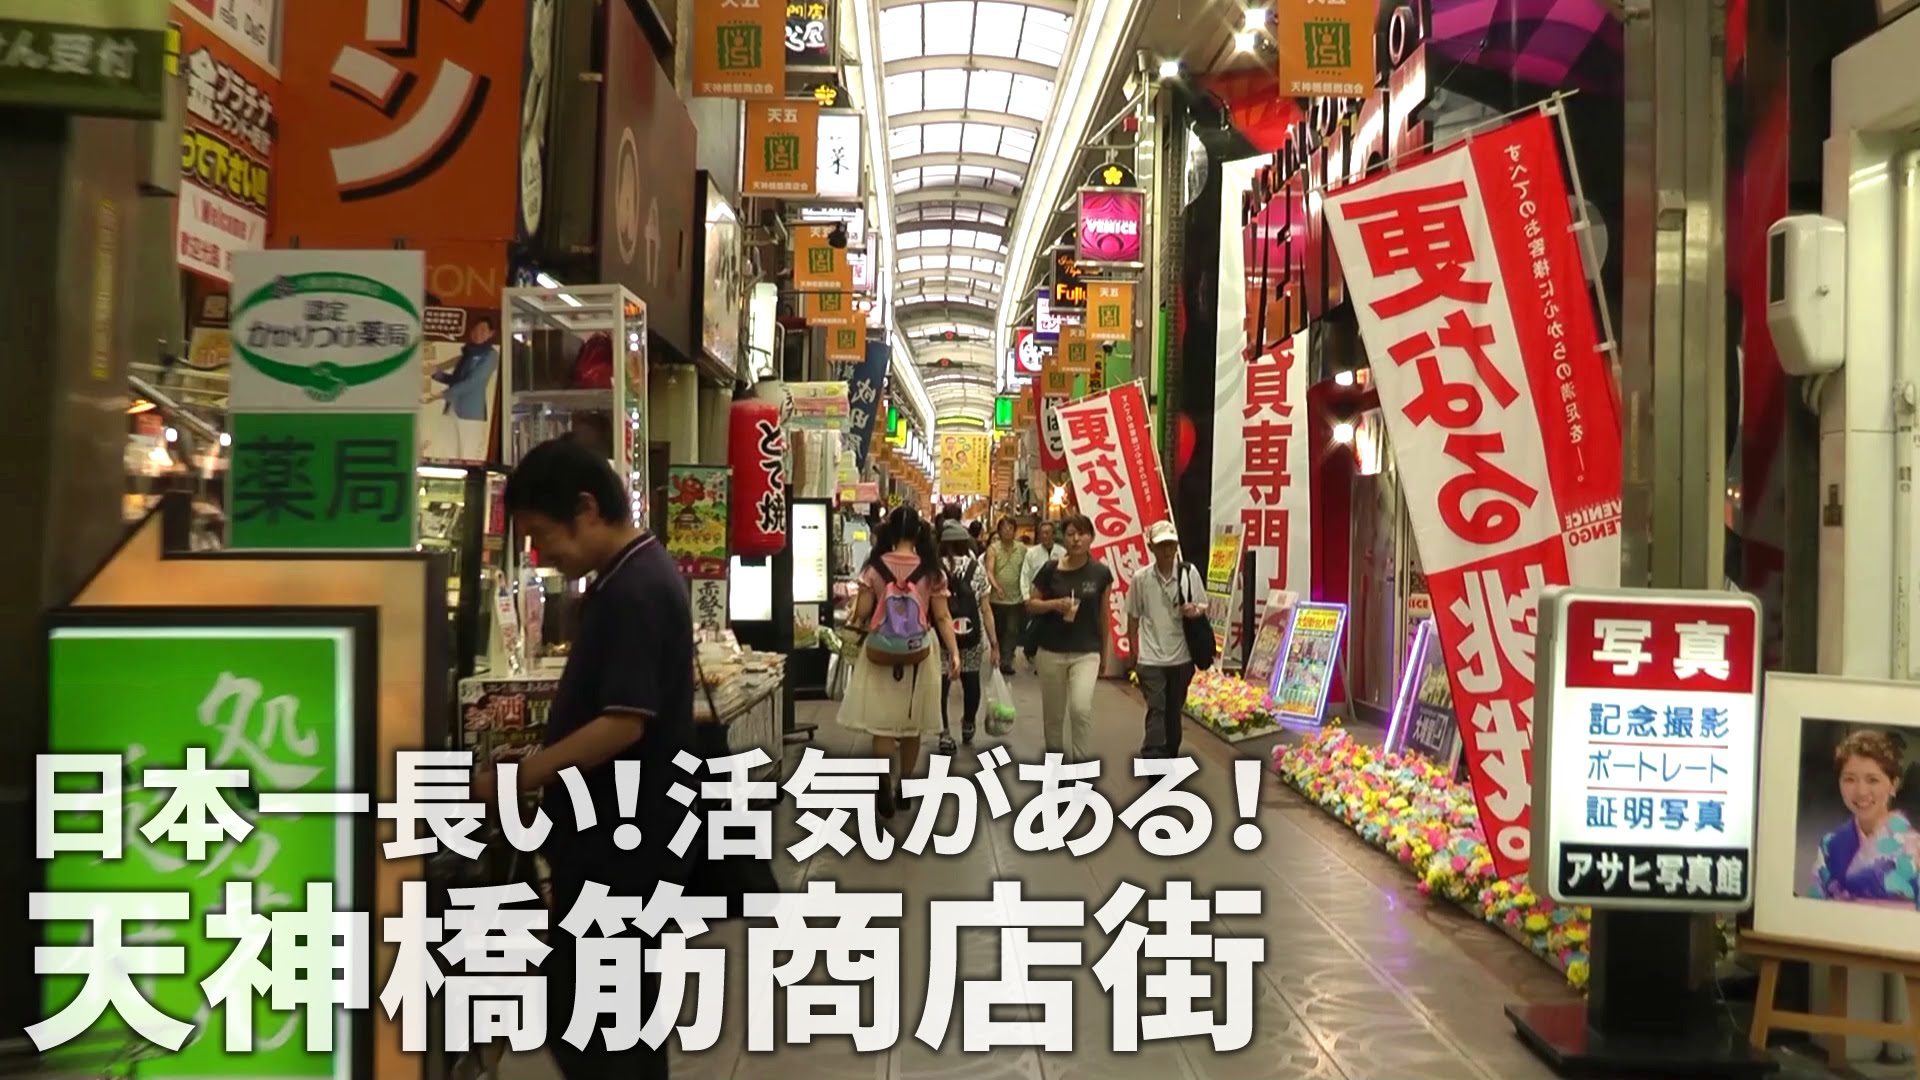 大阪天神橋商店街購物,飲食,觀光既好地方, 700多呎靚裝高層單位, 自用一流!